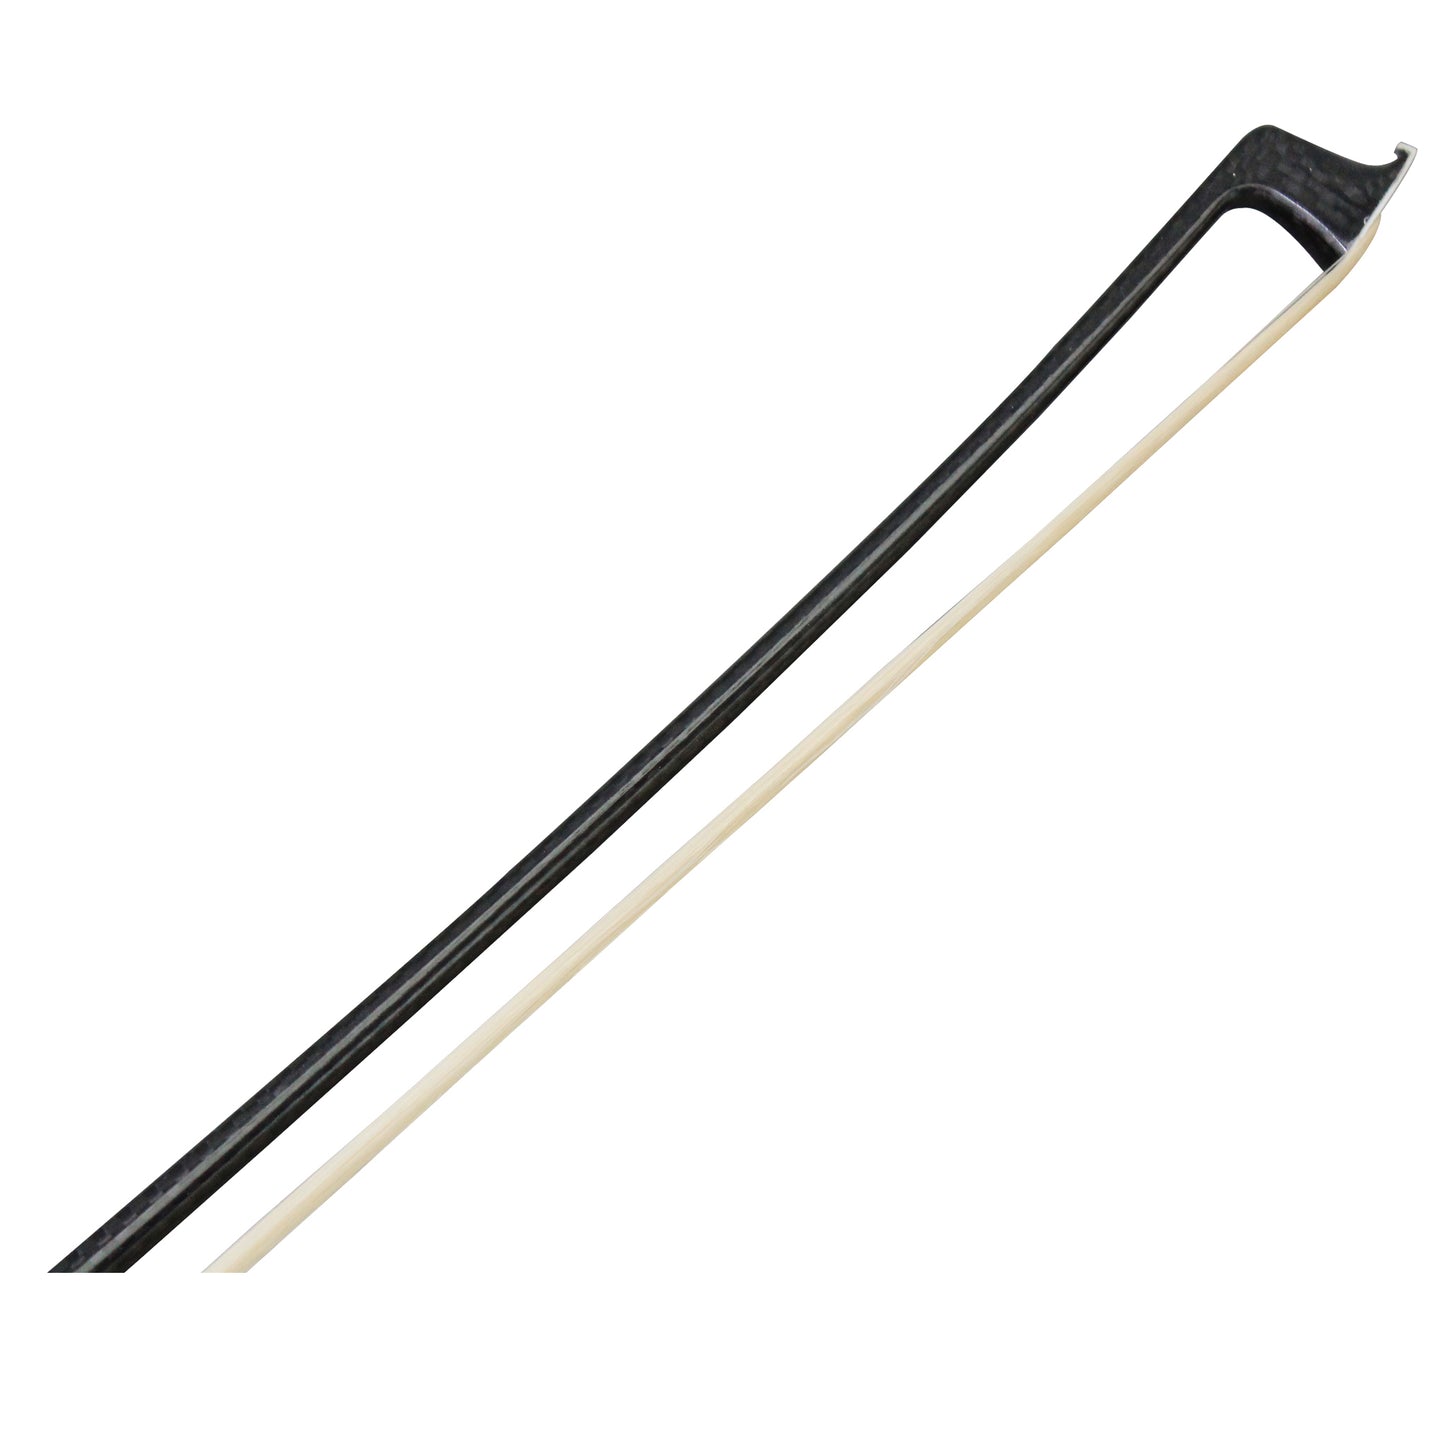 202v black weave carbon fiber violin bow stick